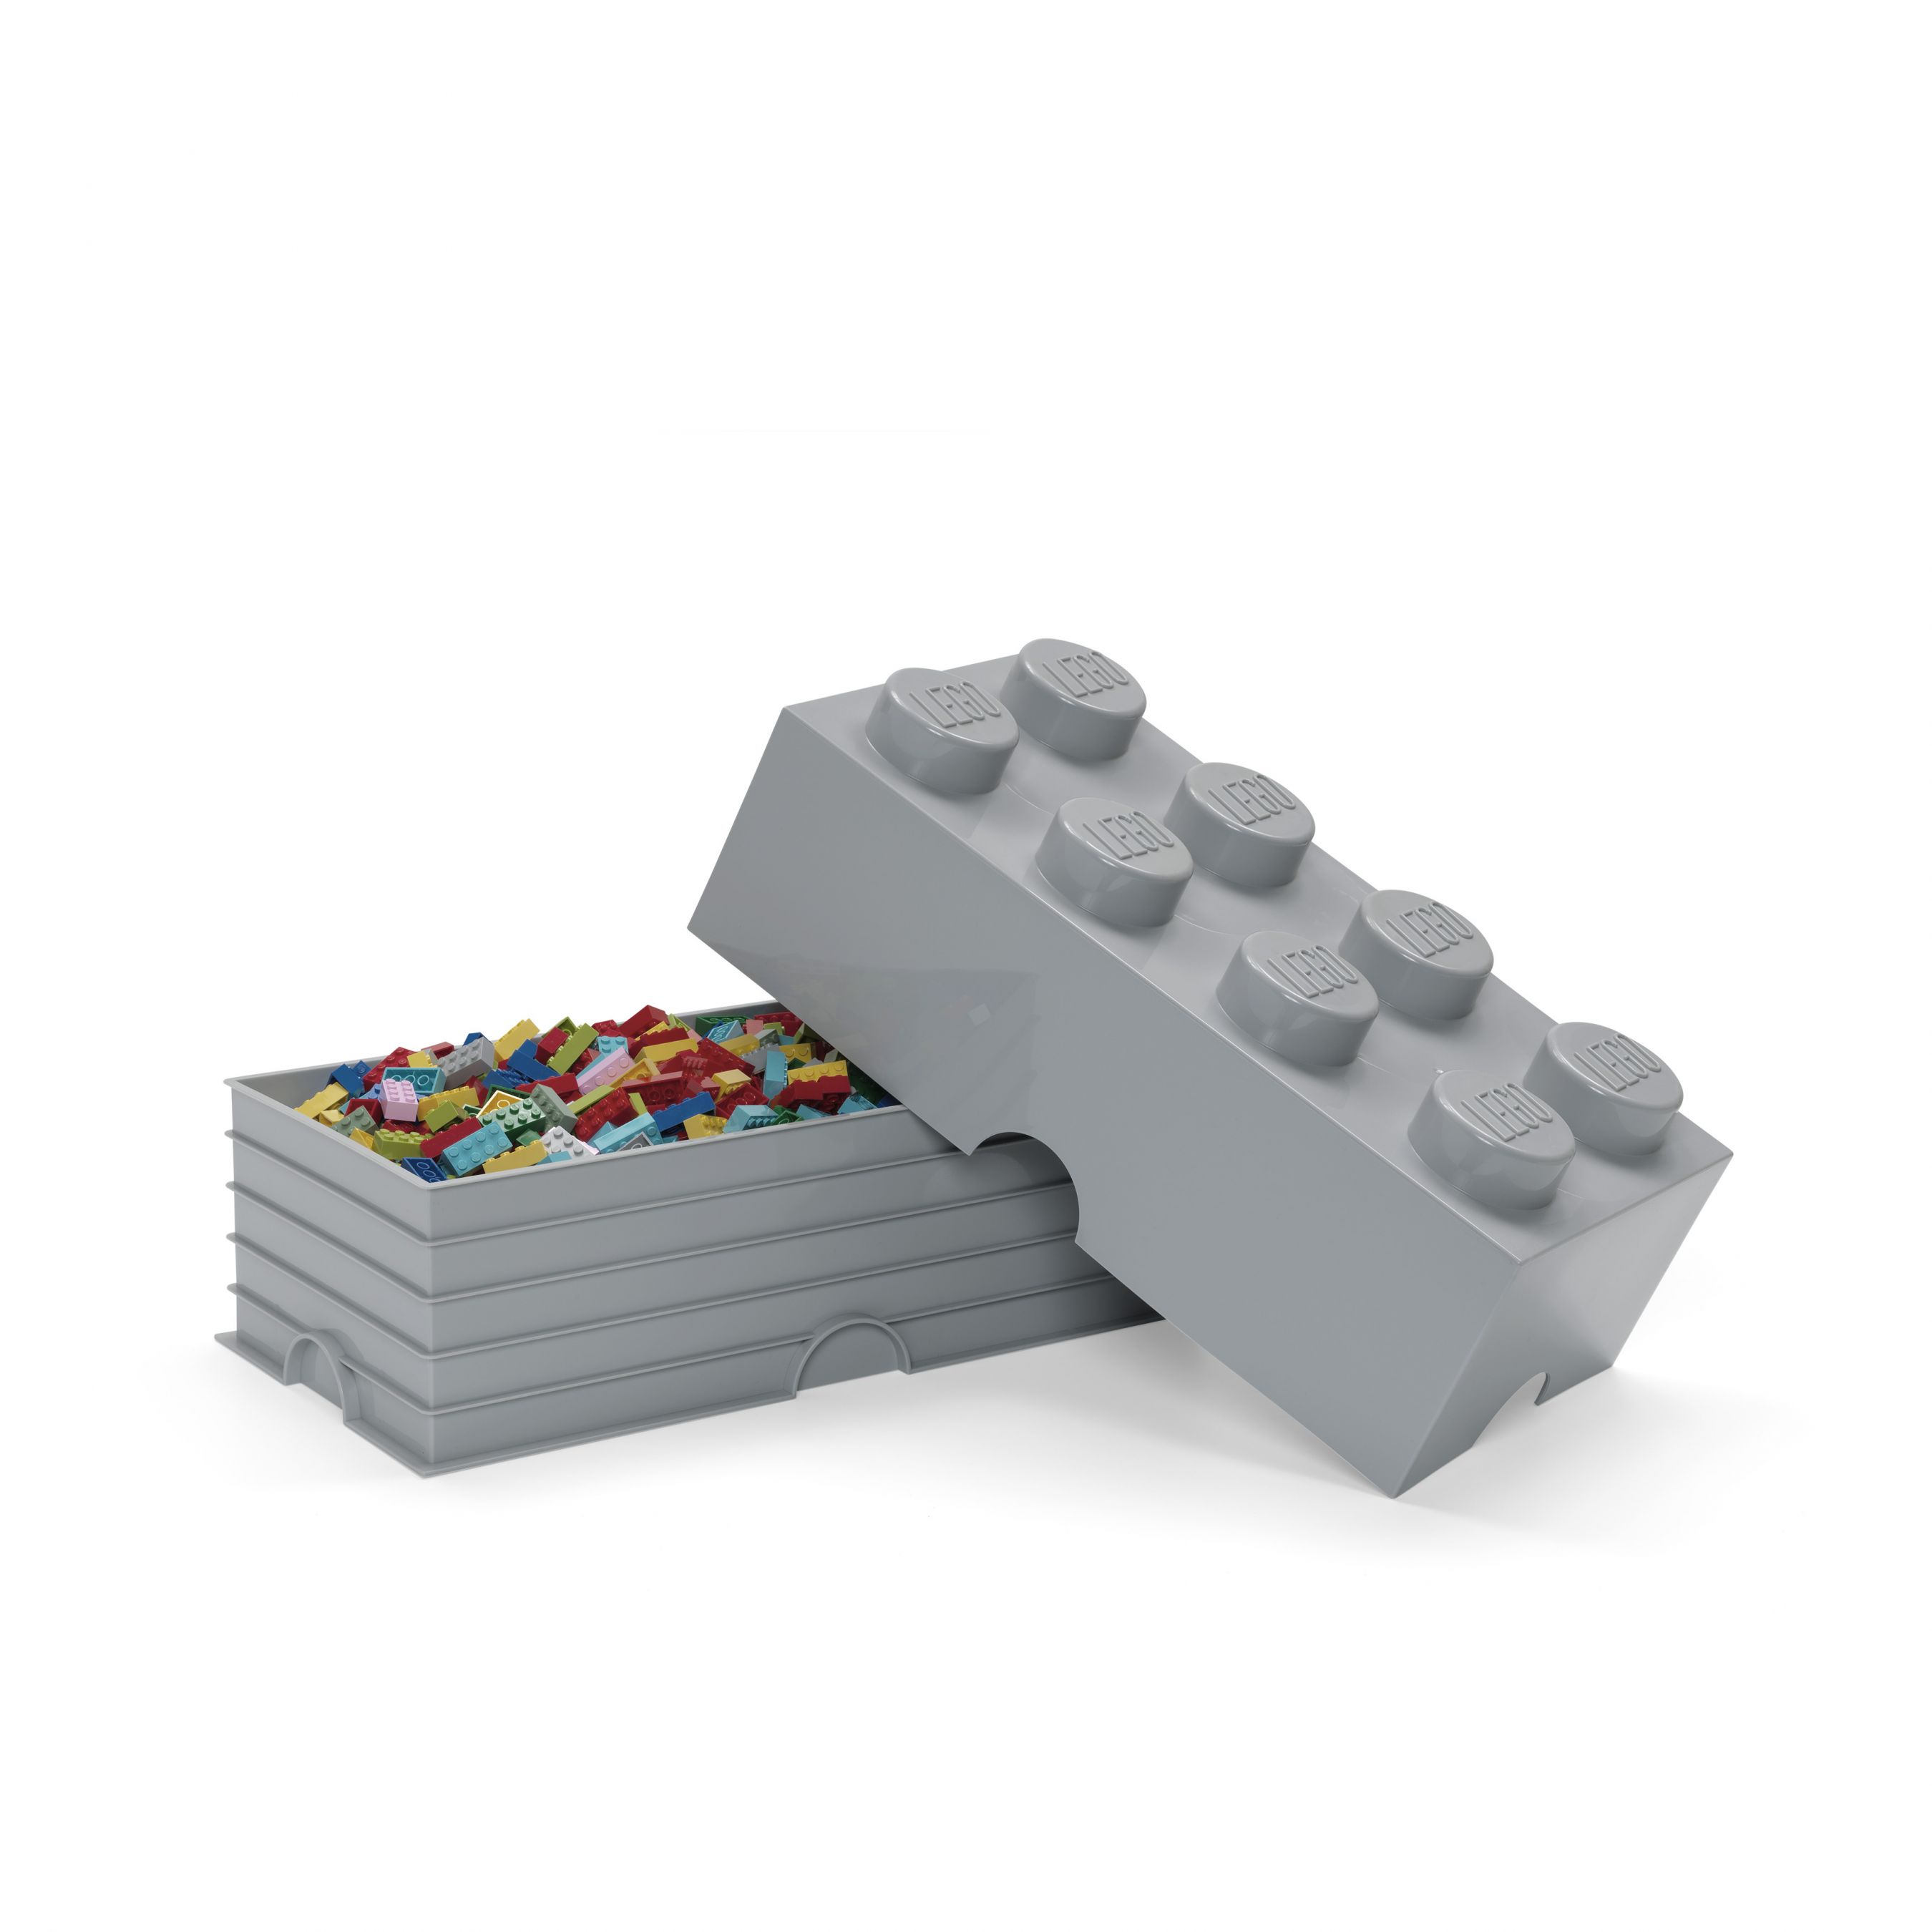 LEGO Gear 5007268 Aufbewahrungsstein mit 8 Noppen in Steingrau LEGO_5007268_alt2.jpg